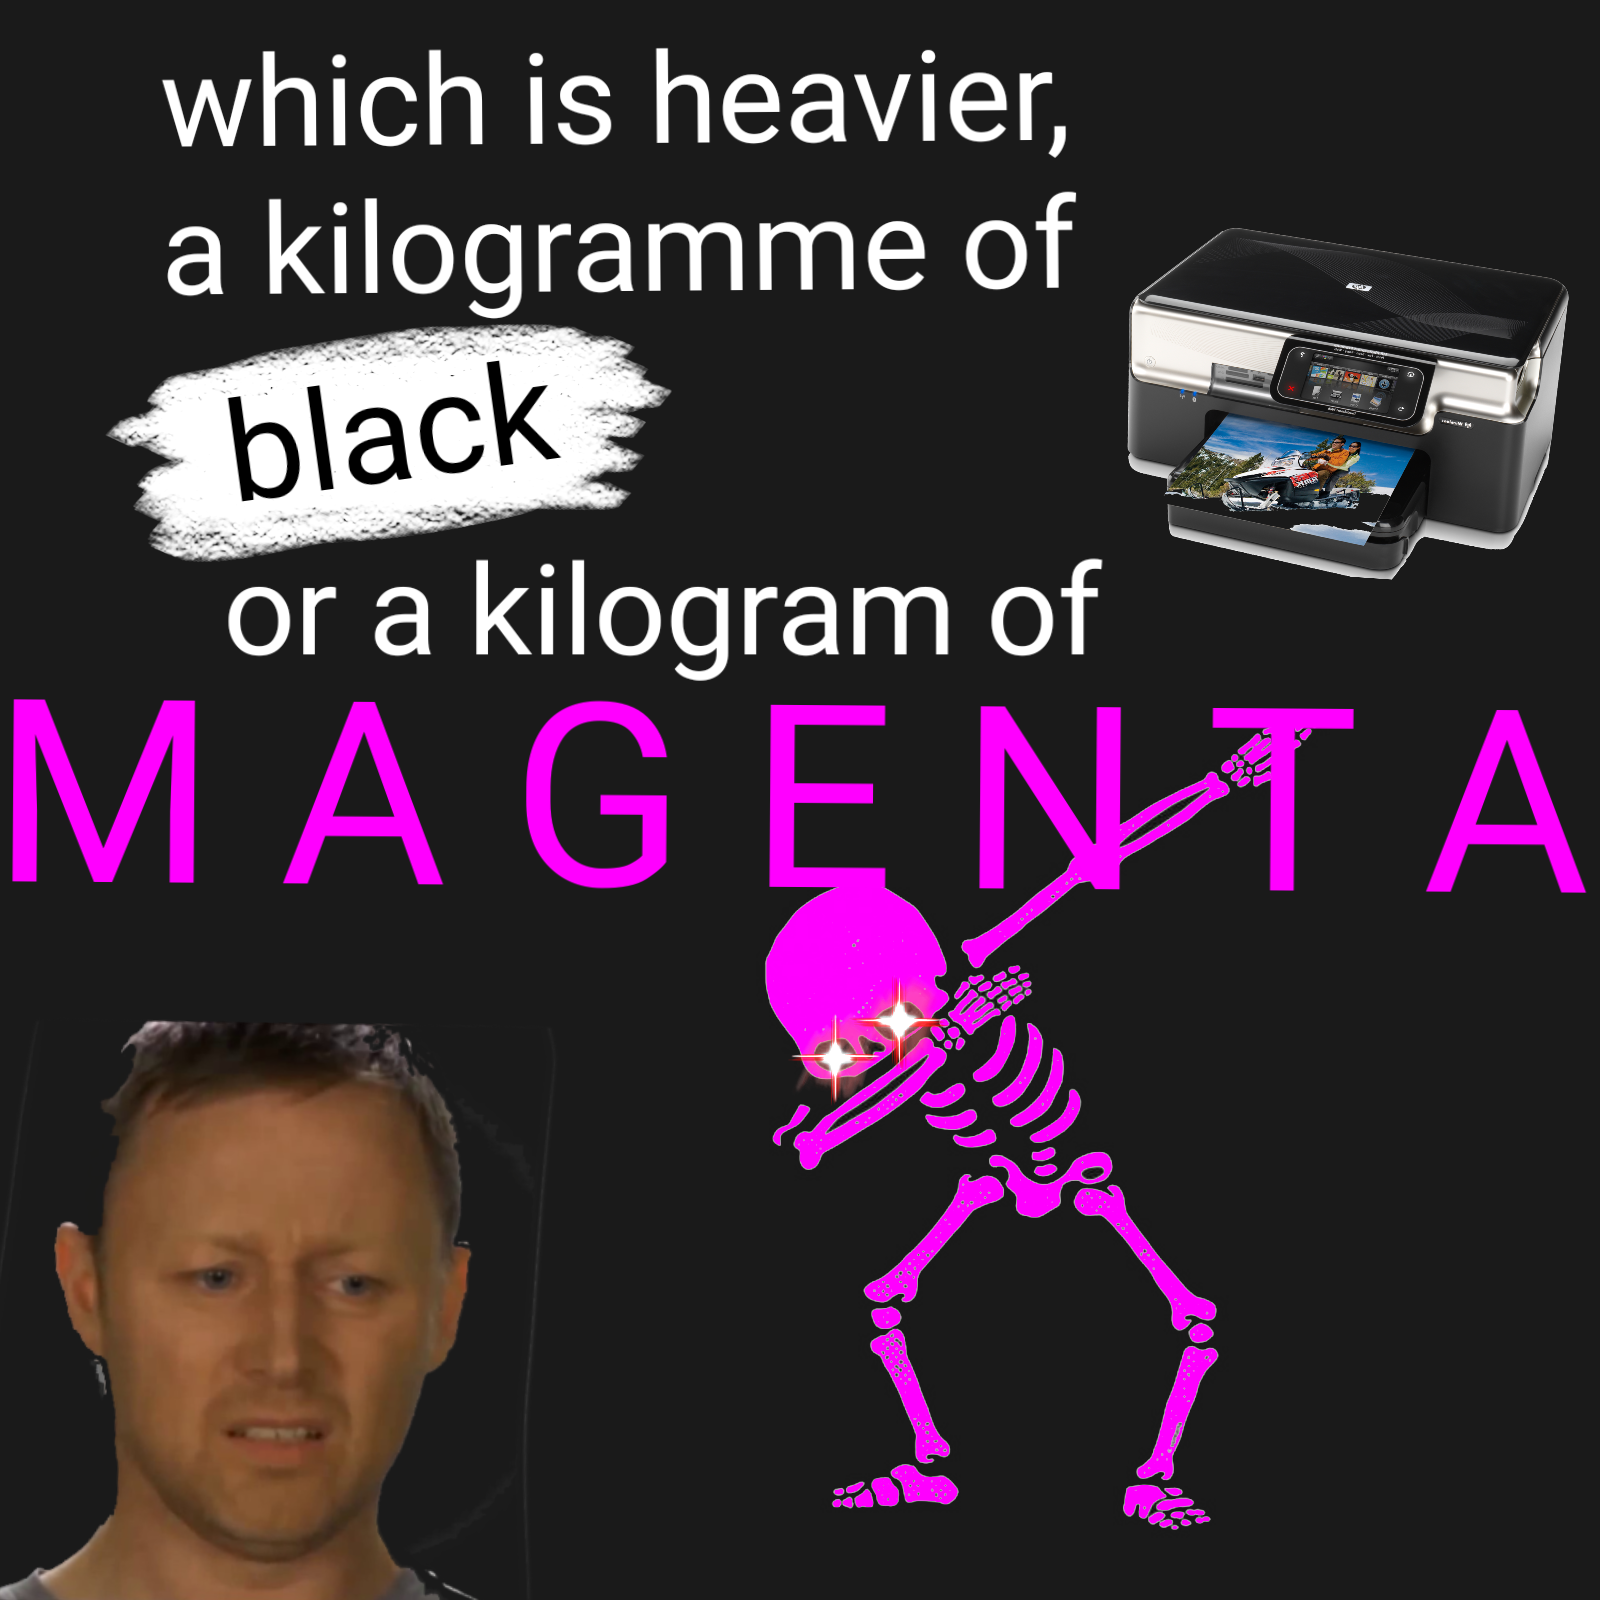 Spooky magenta